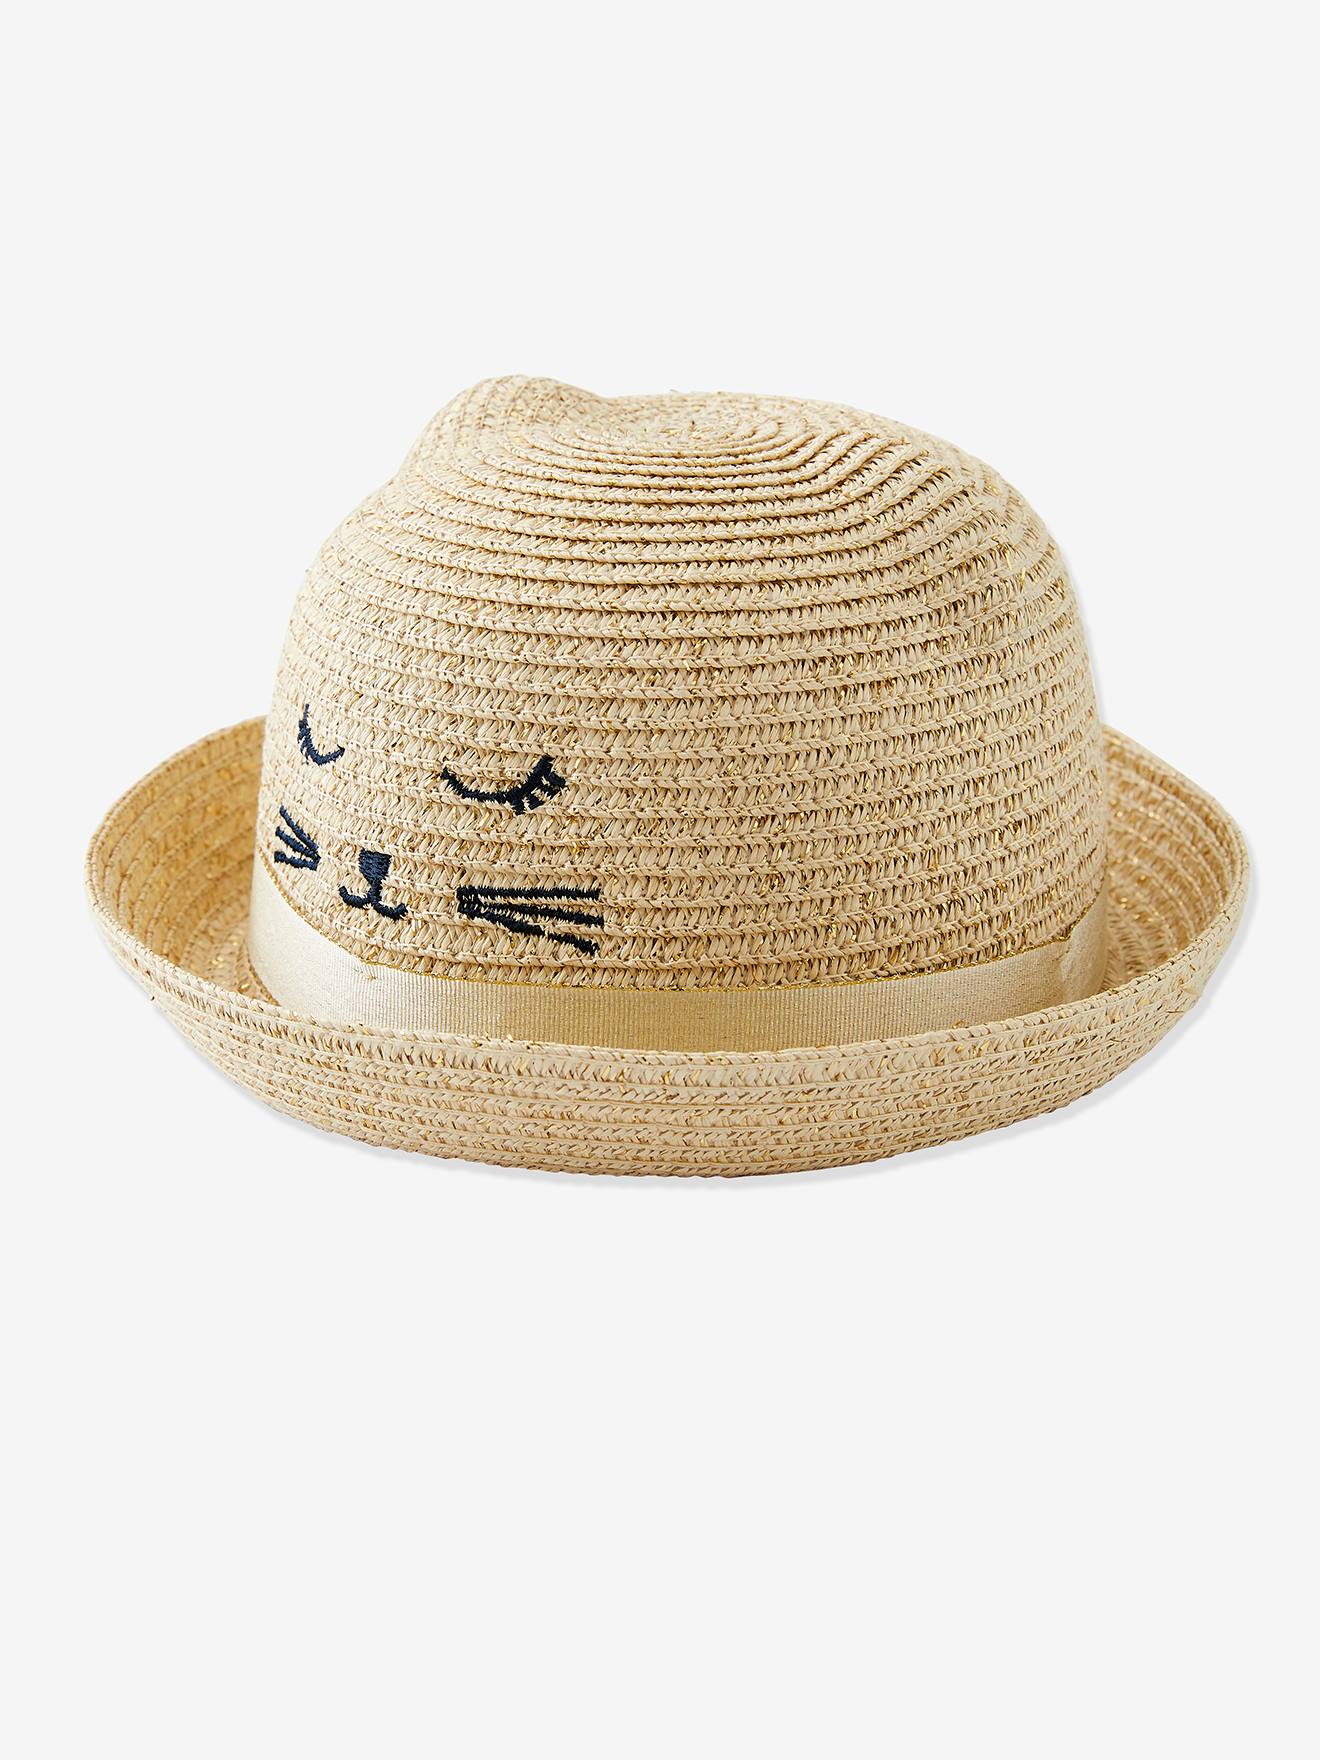 Chapeau de soleil fille irisé broderie chat et oreilles fantaisie naturel irisé